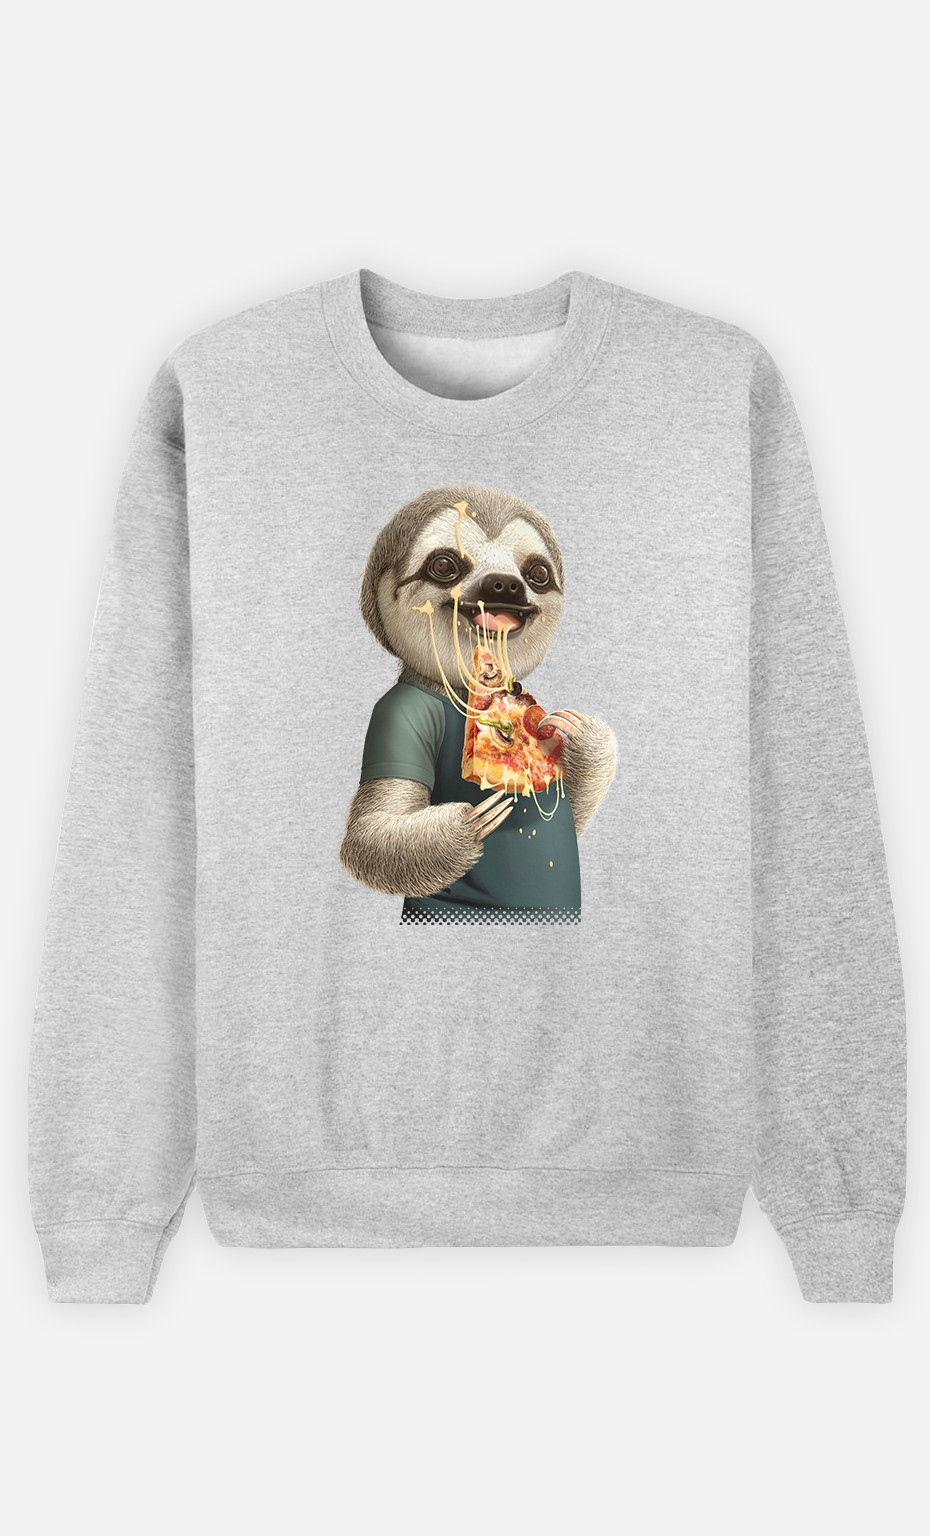 Sweatshirt Woman Sloth Eat Pizza